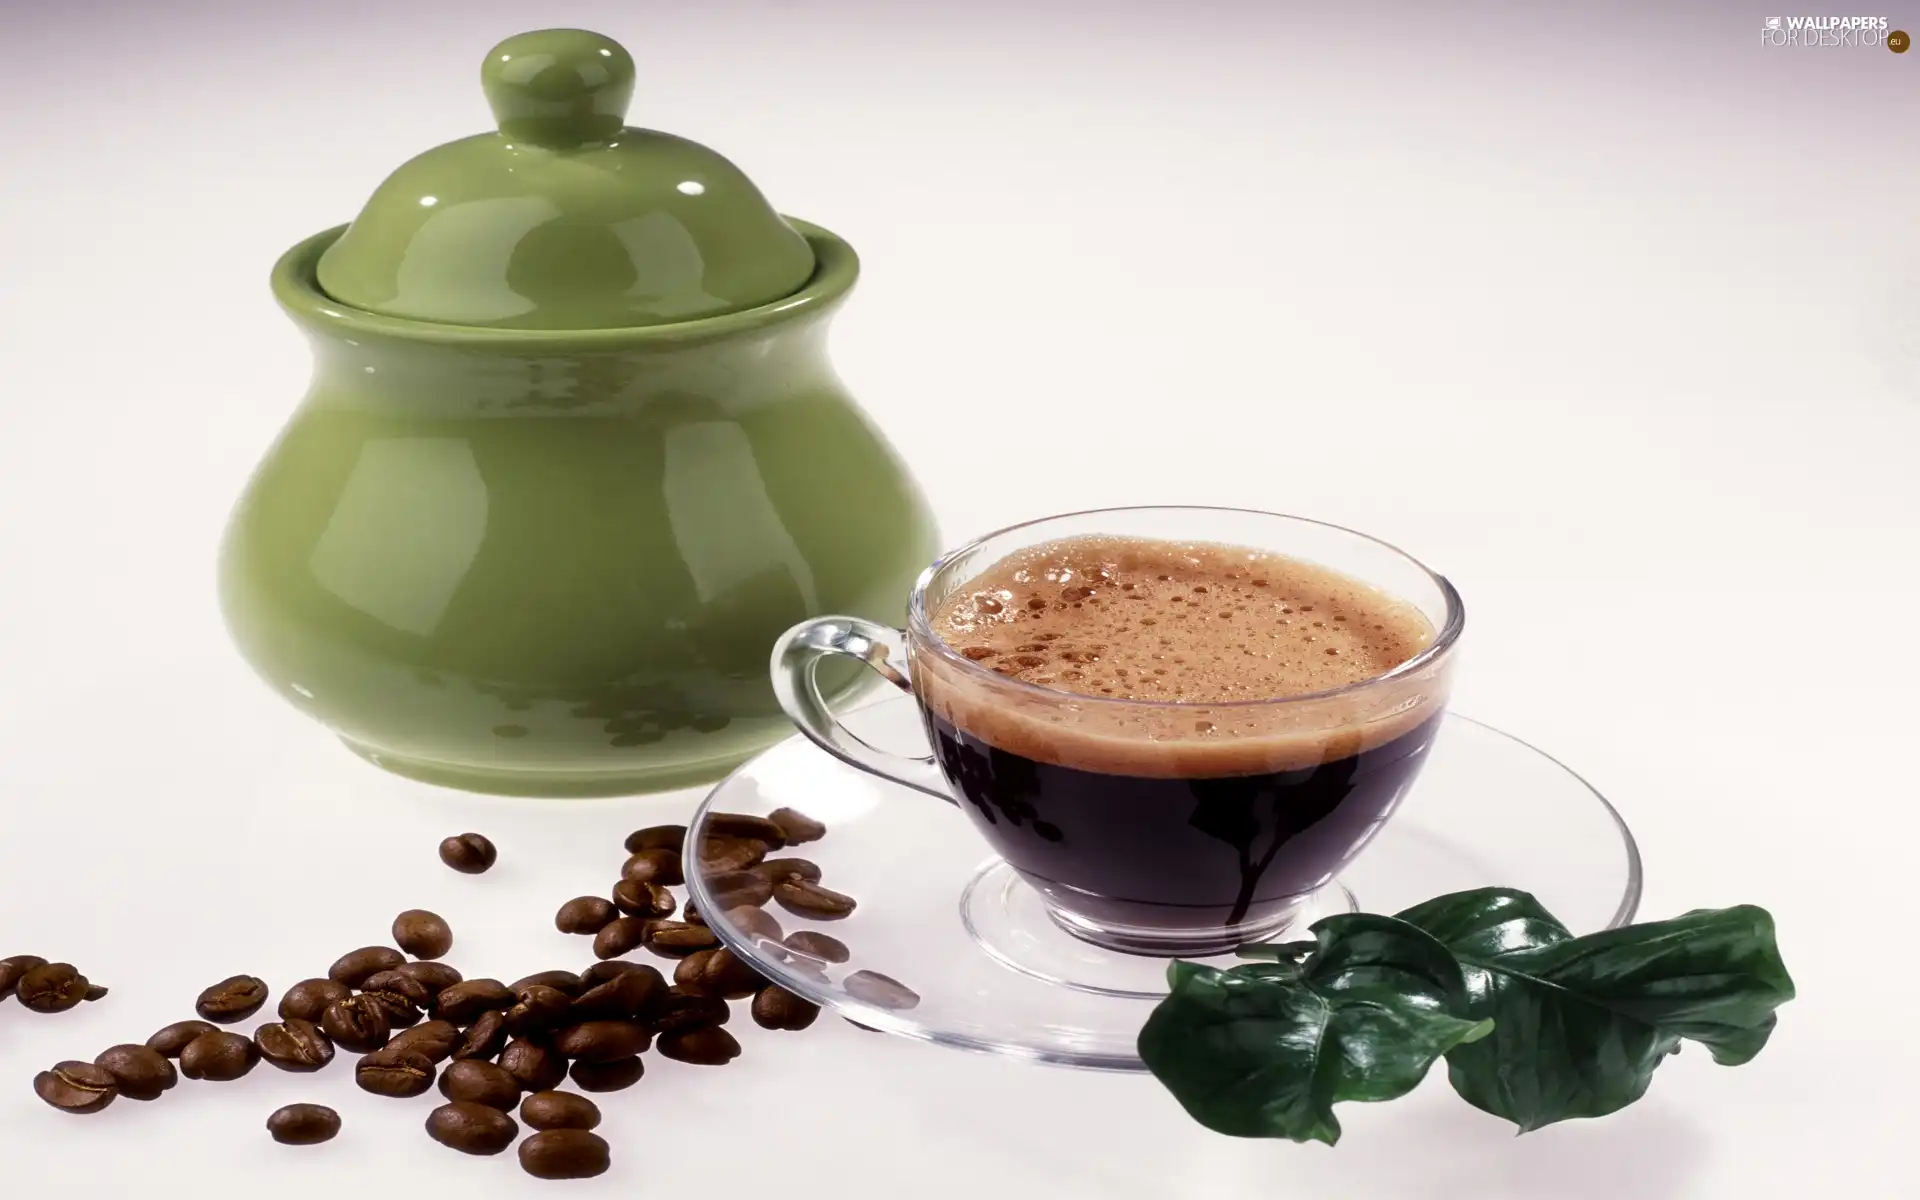 Green, sugar bowl, coffee, grains, cup